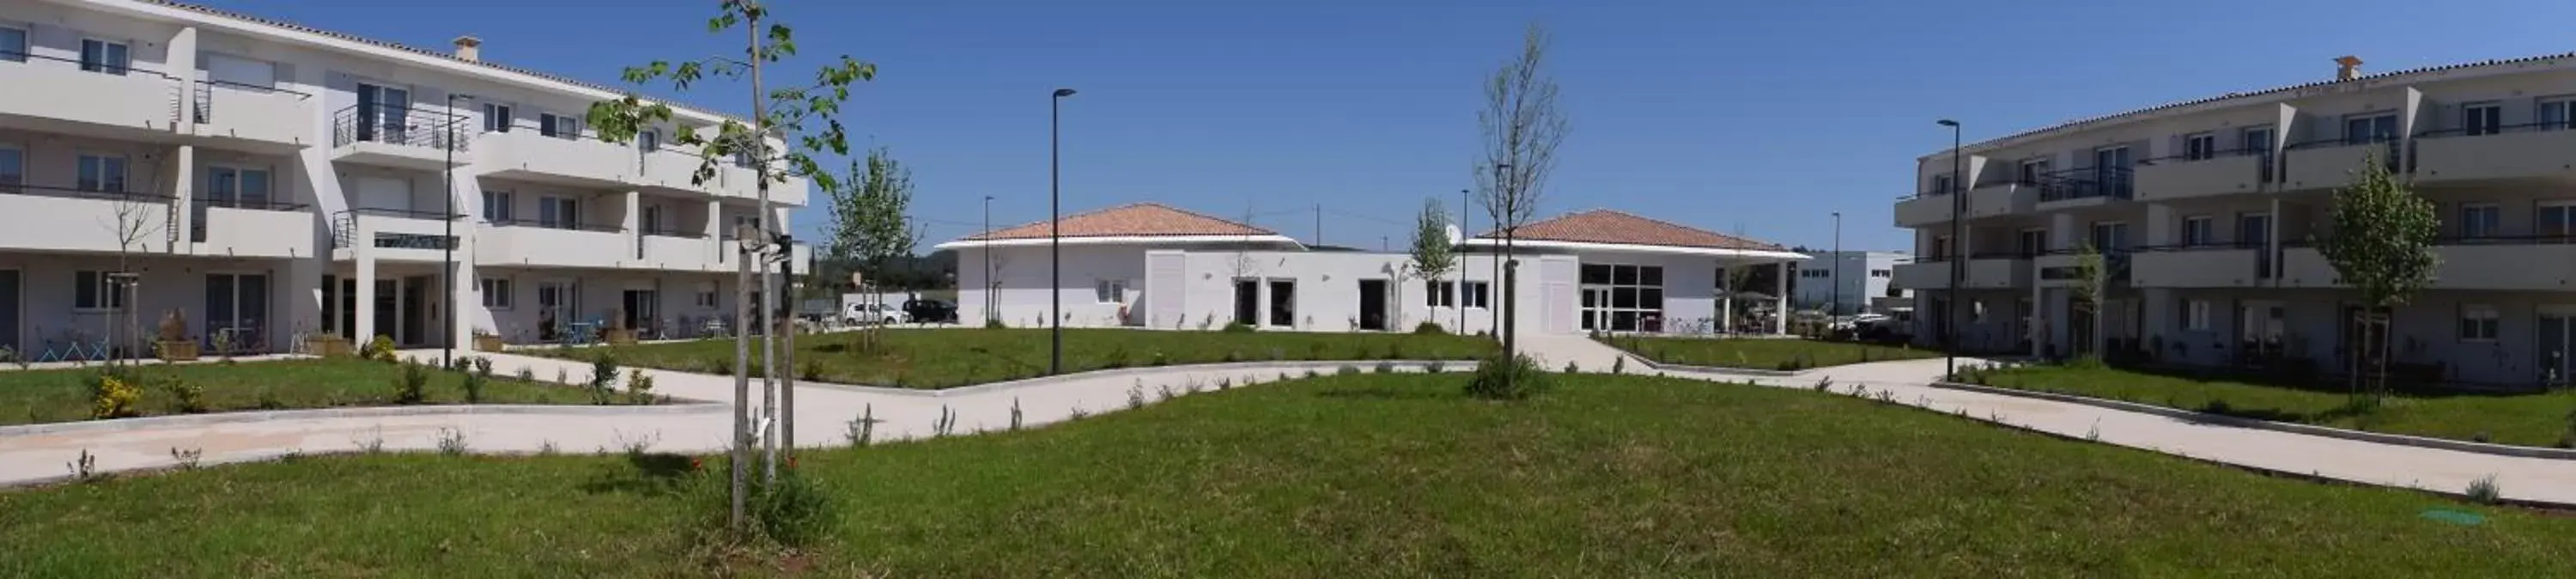 Property Building in Résidence Estérazur